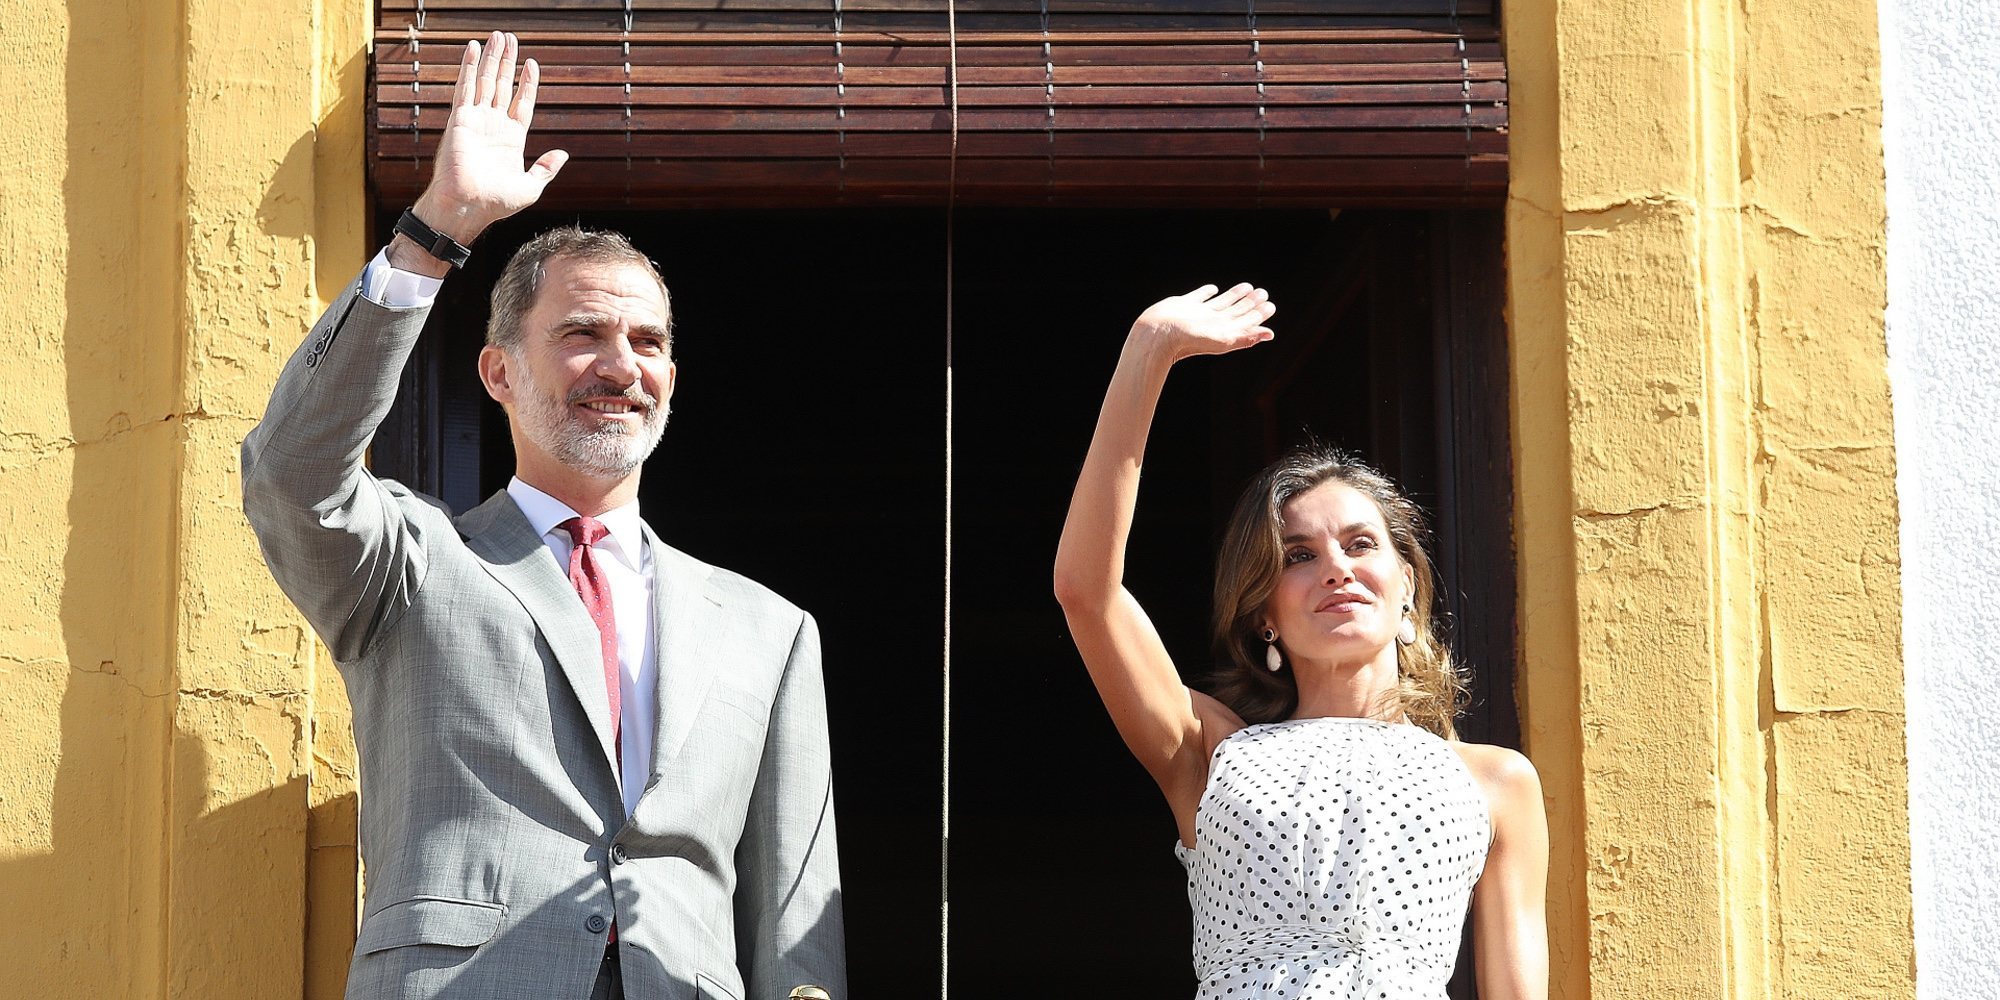 Los Reyes Felipe y Letizia, emocionados en la celebración del 210 aniversario de la batalla de Bailén